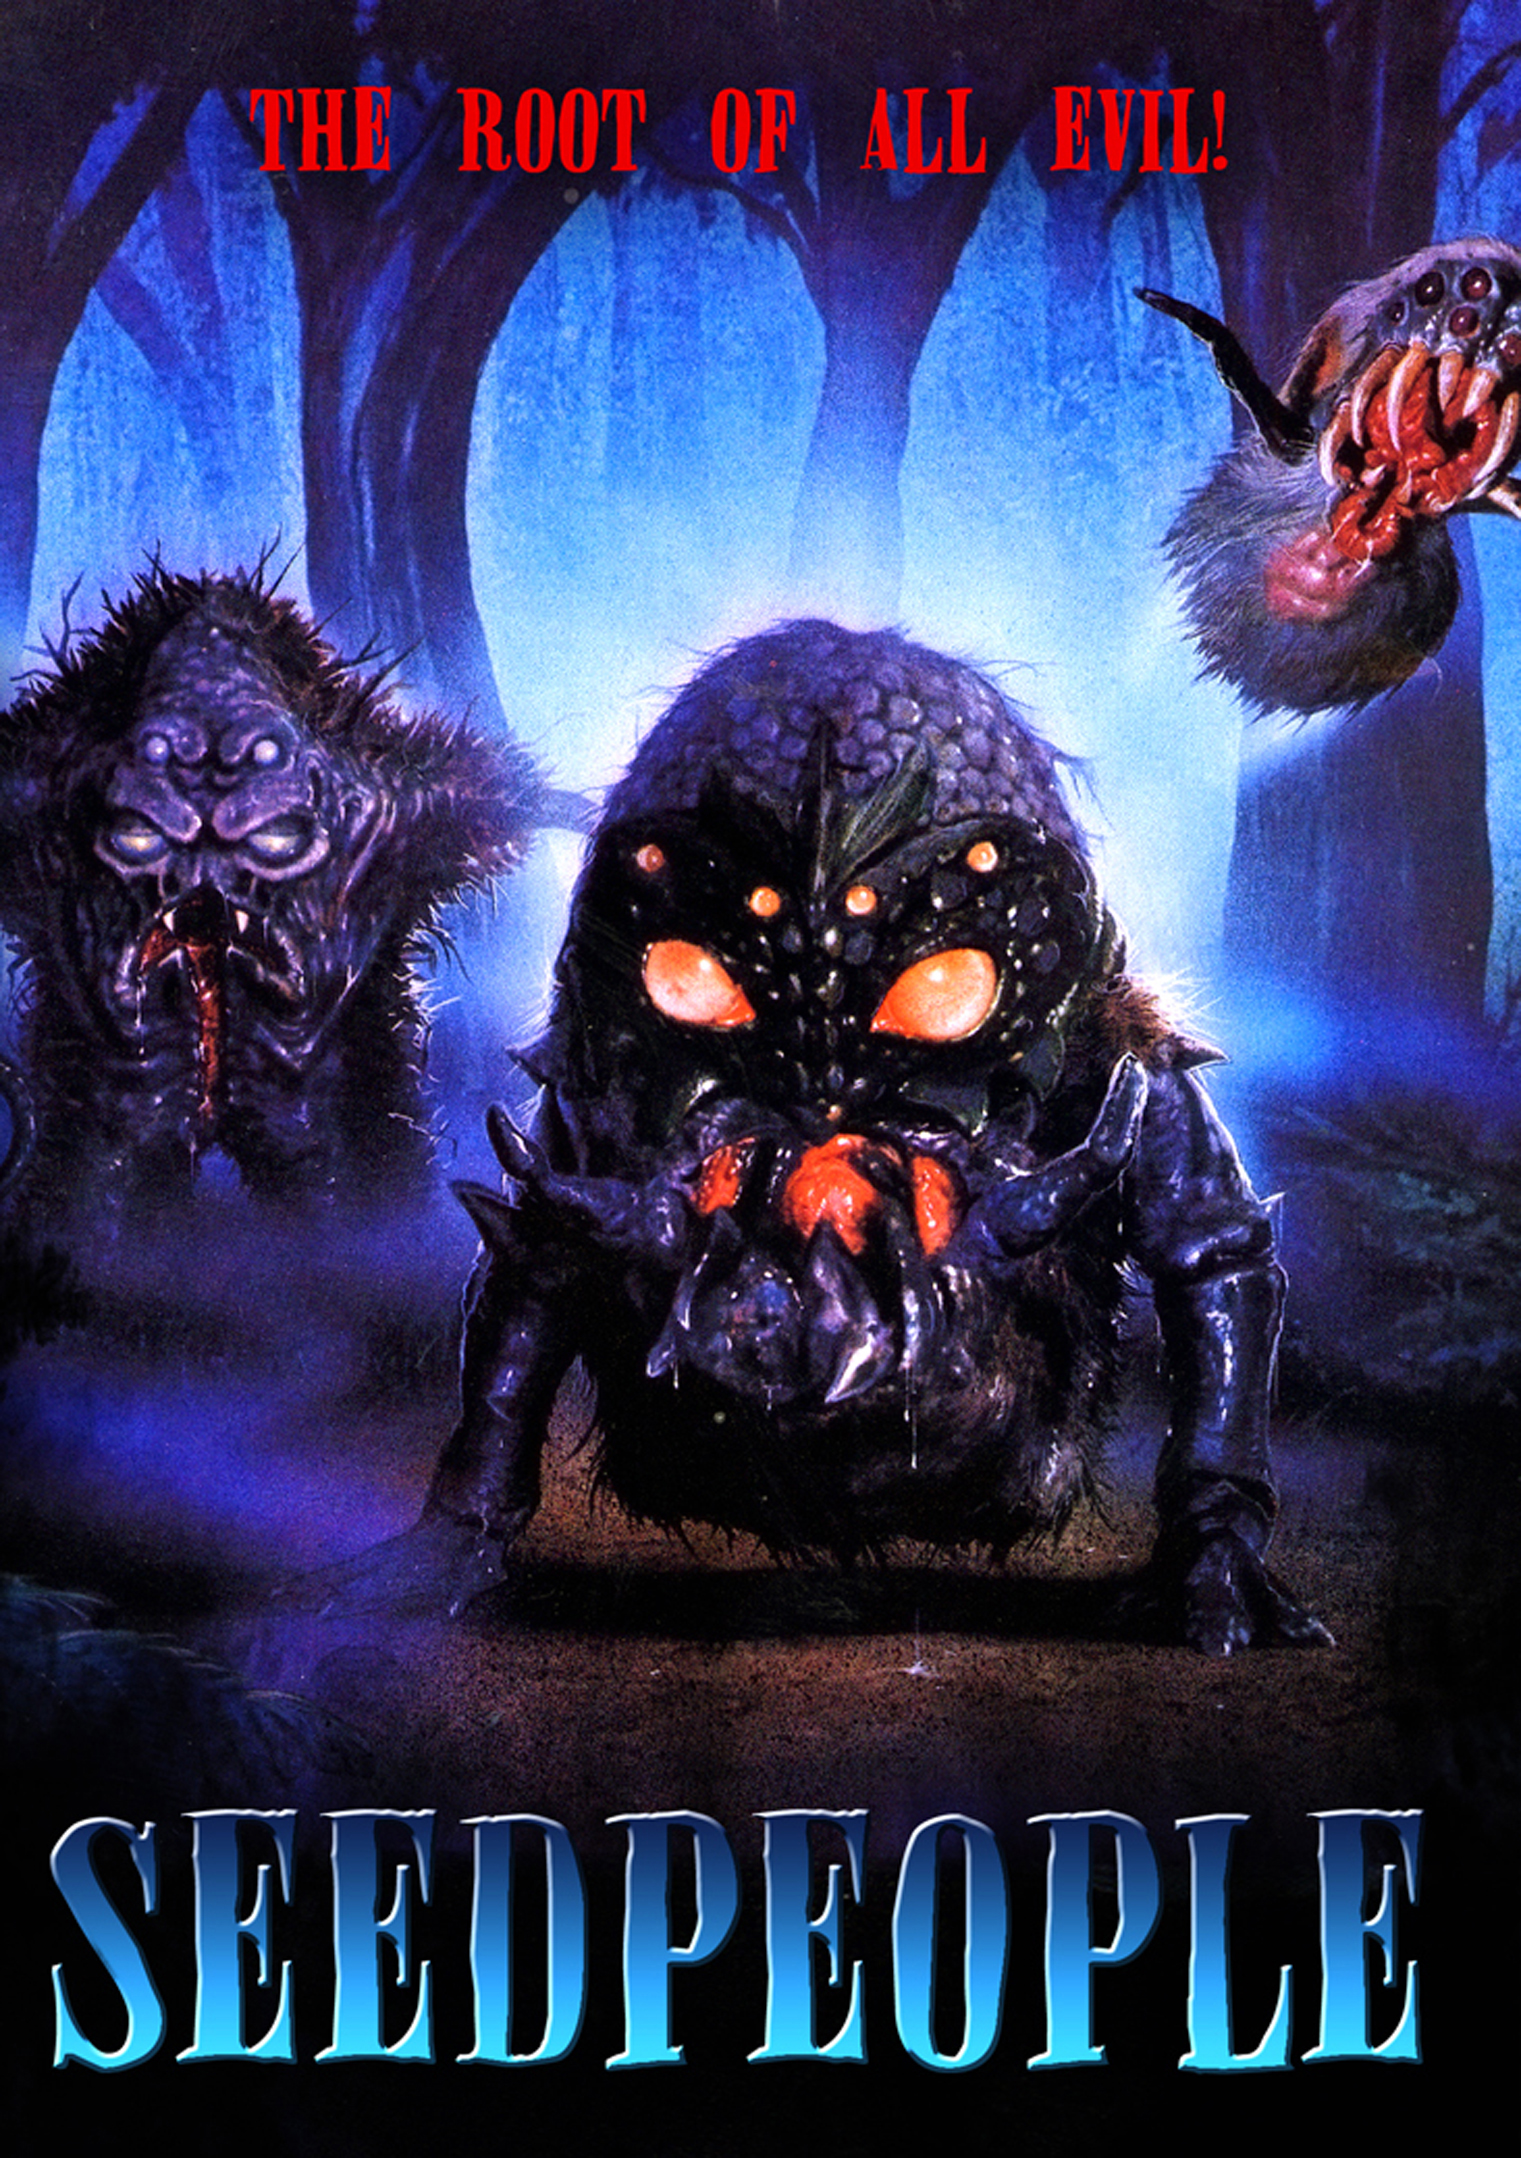 Seedpeople [DVD] [1992]